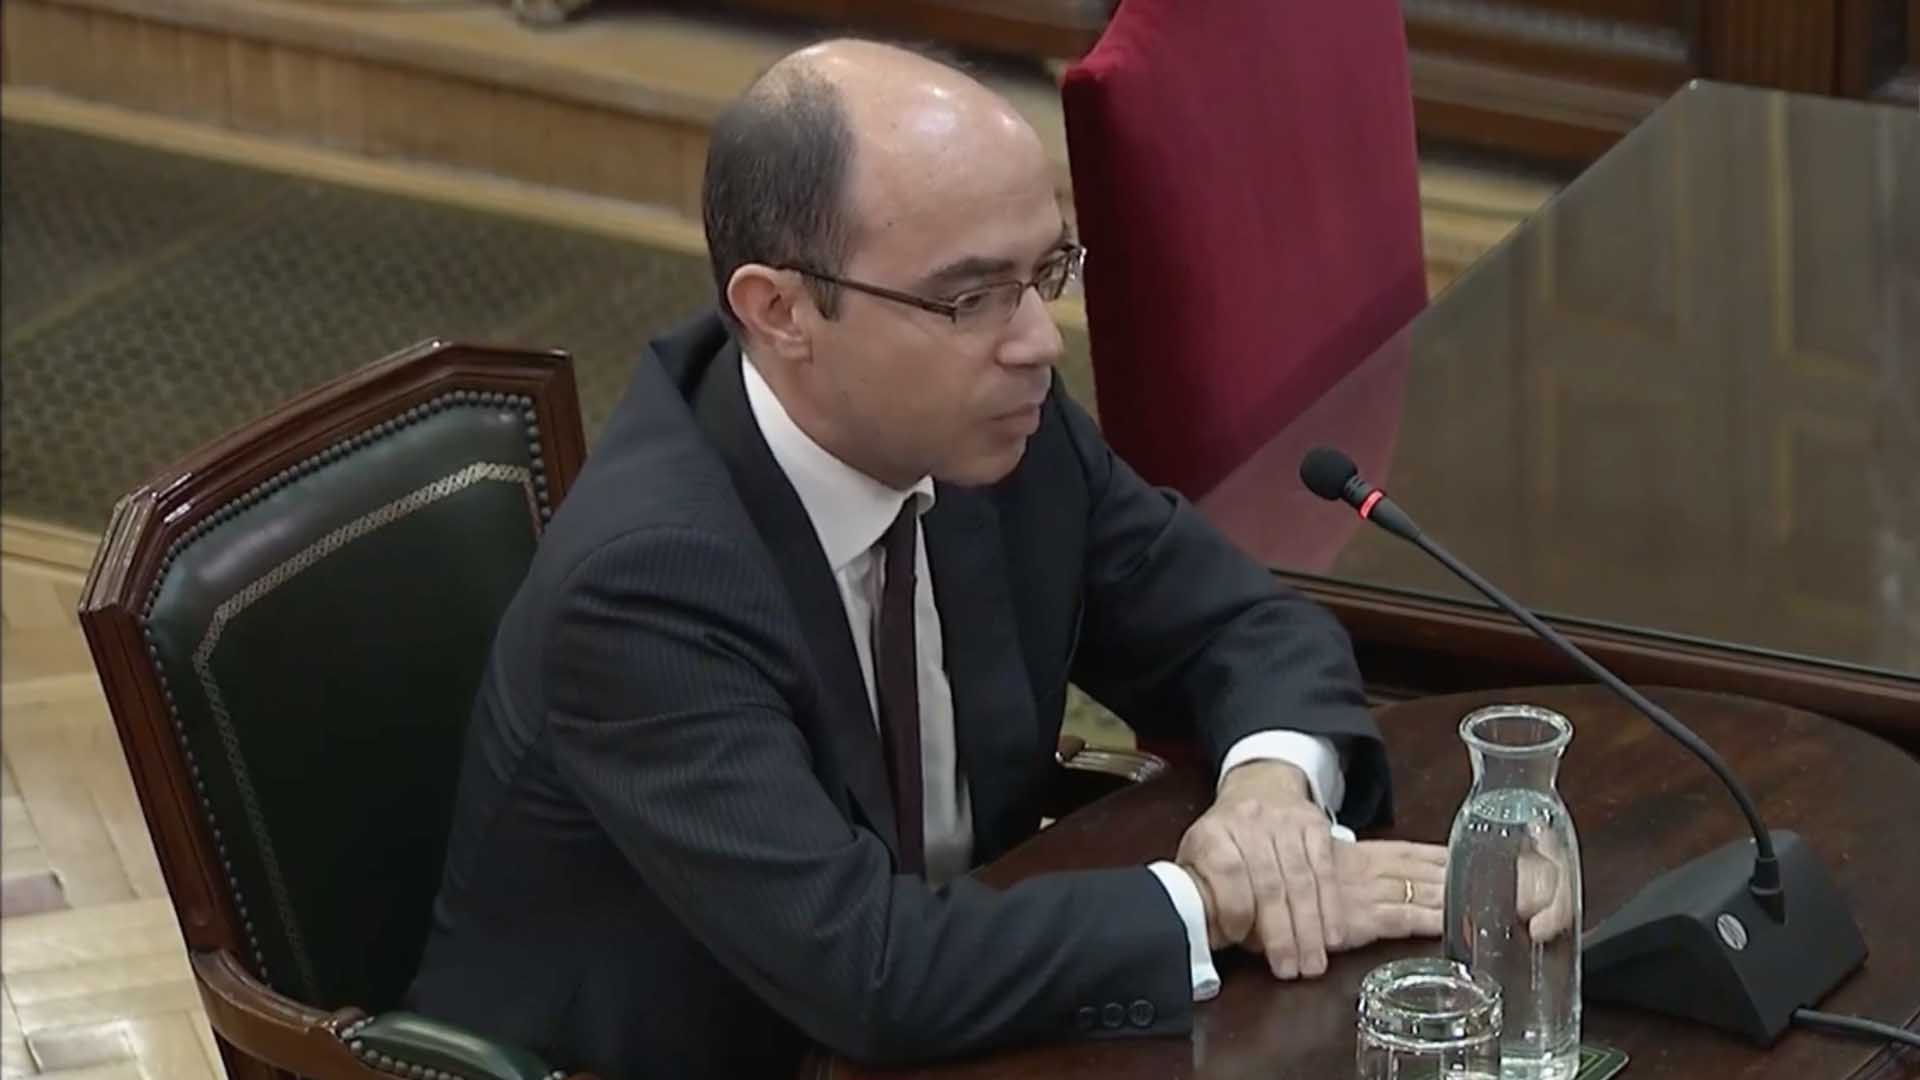 El exsubsecretario de Hacienda Martínez Rico admite que la Generalitat pudo saltarse el control financiero del Estado